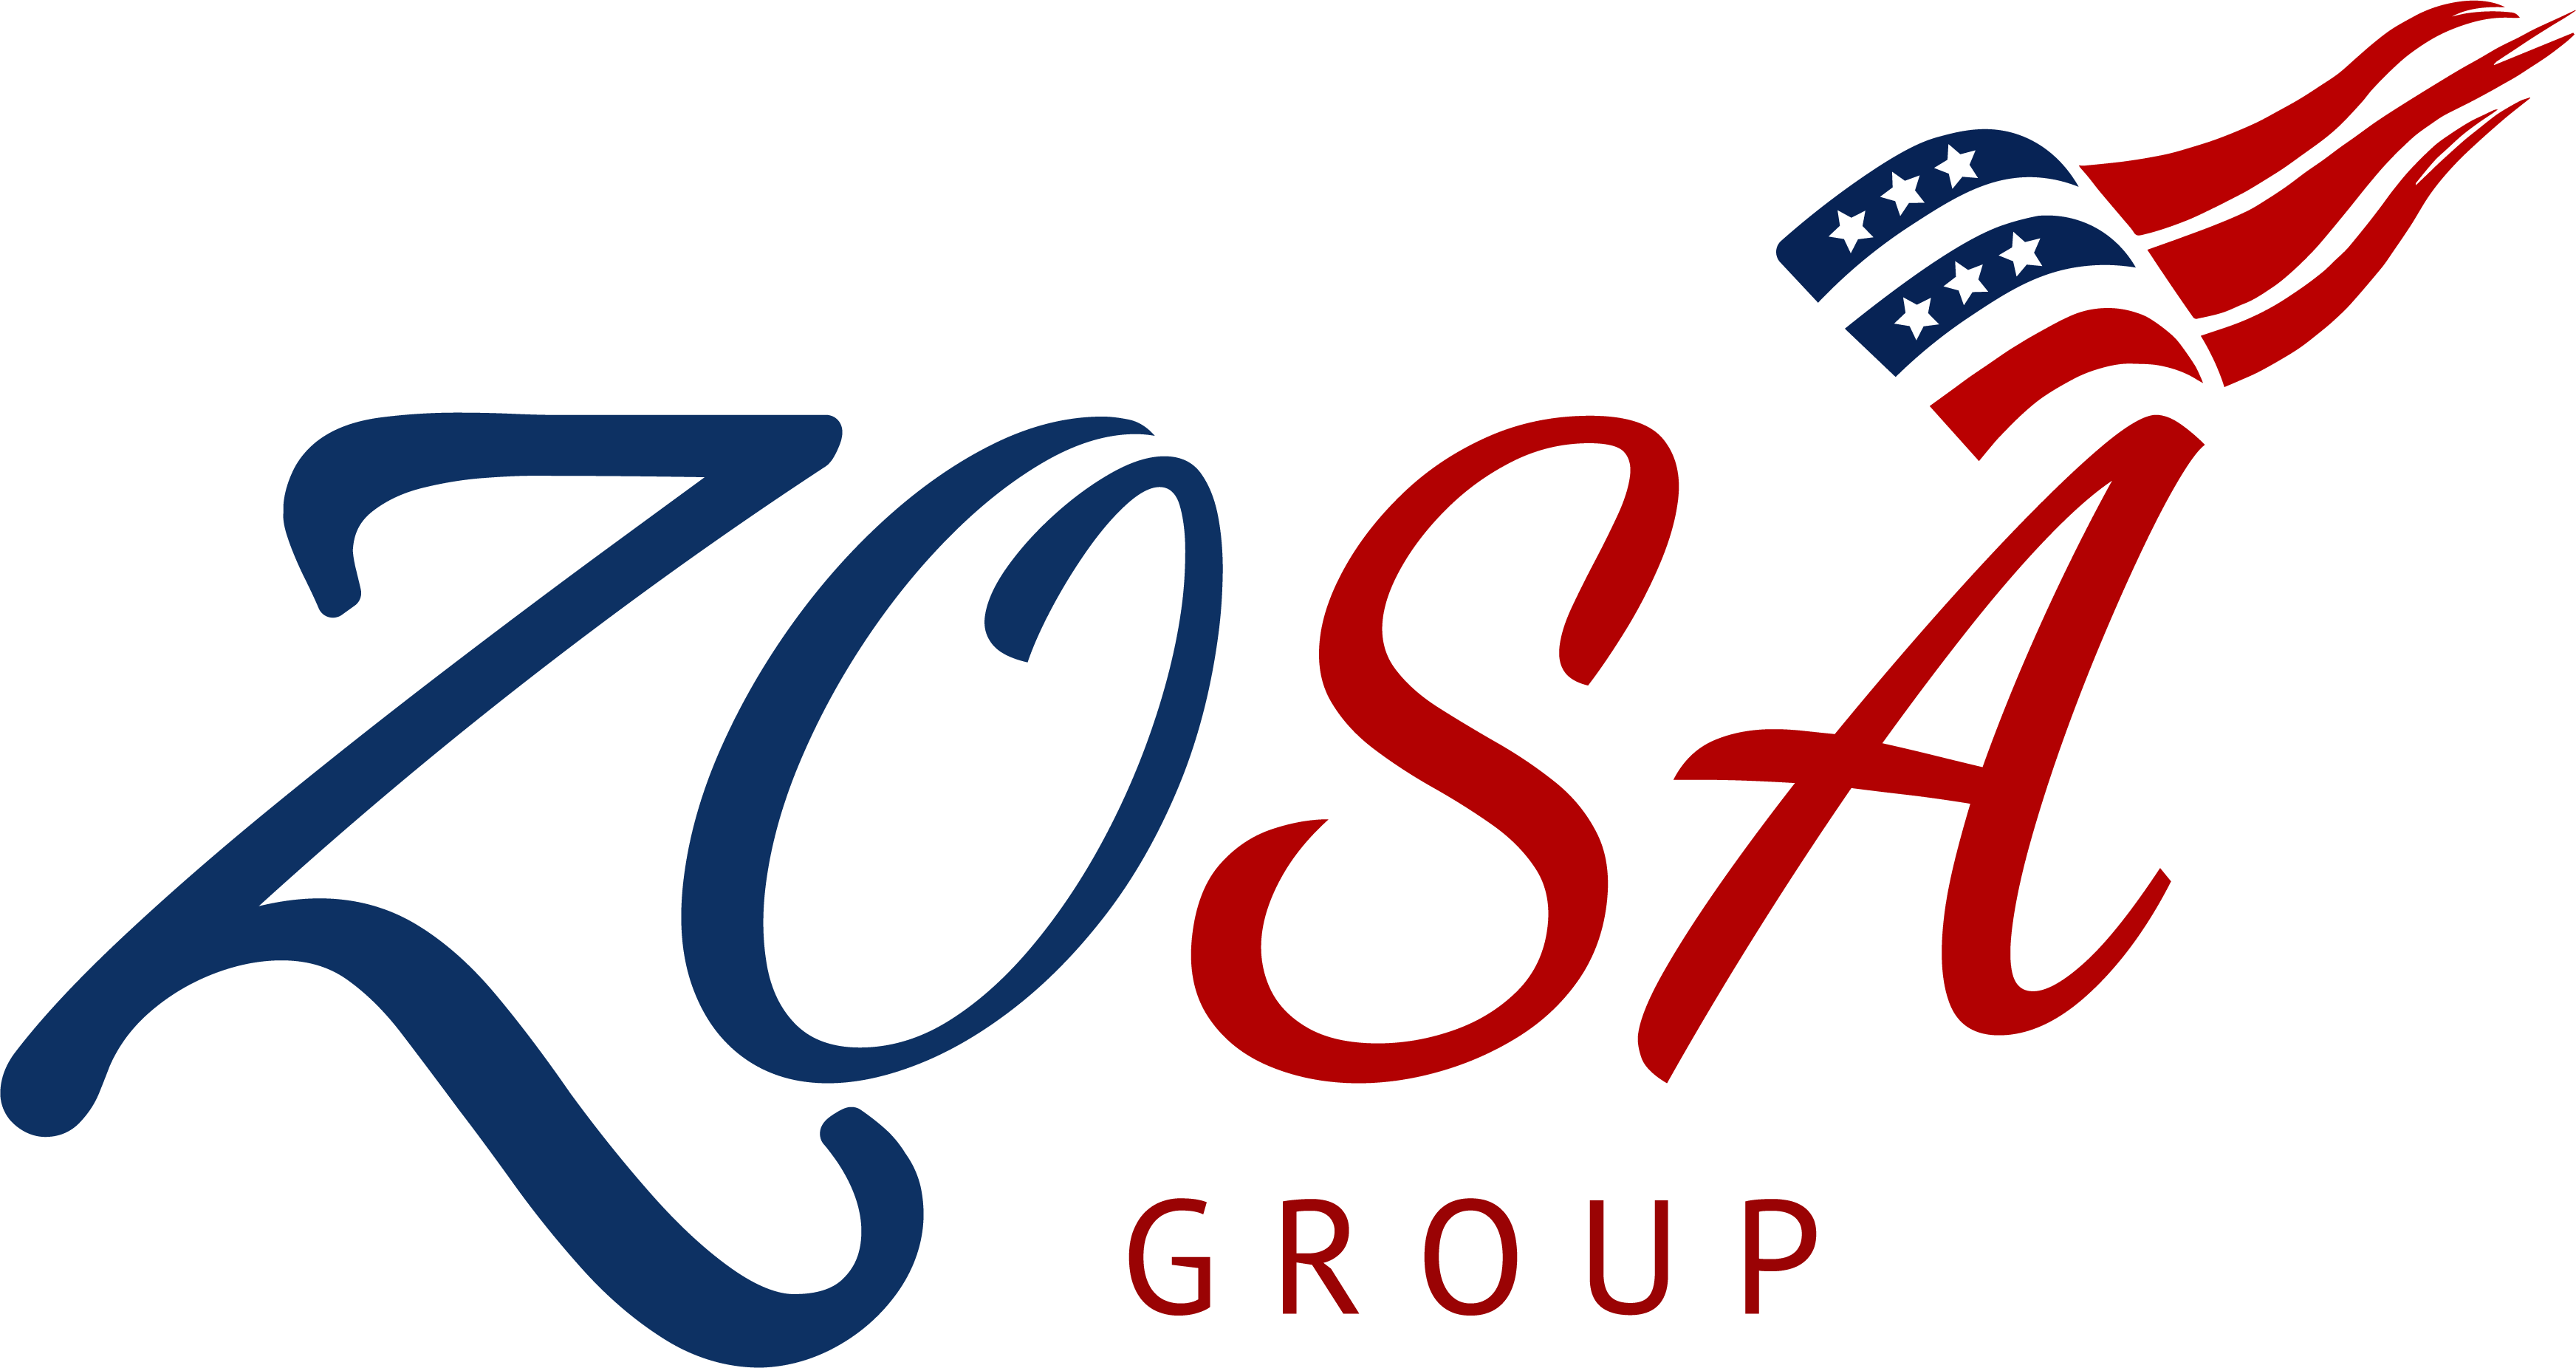 ZOSA Group